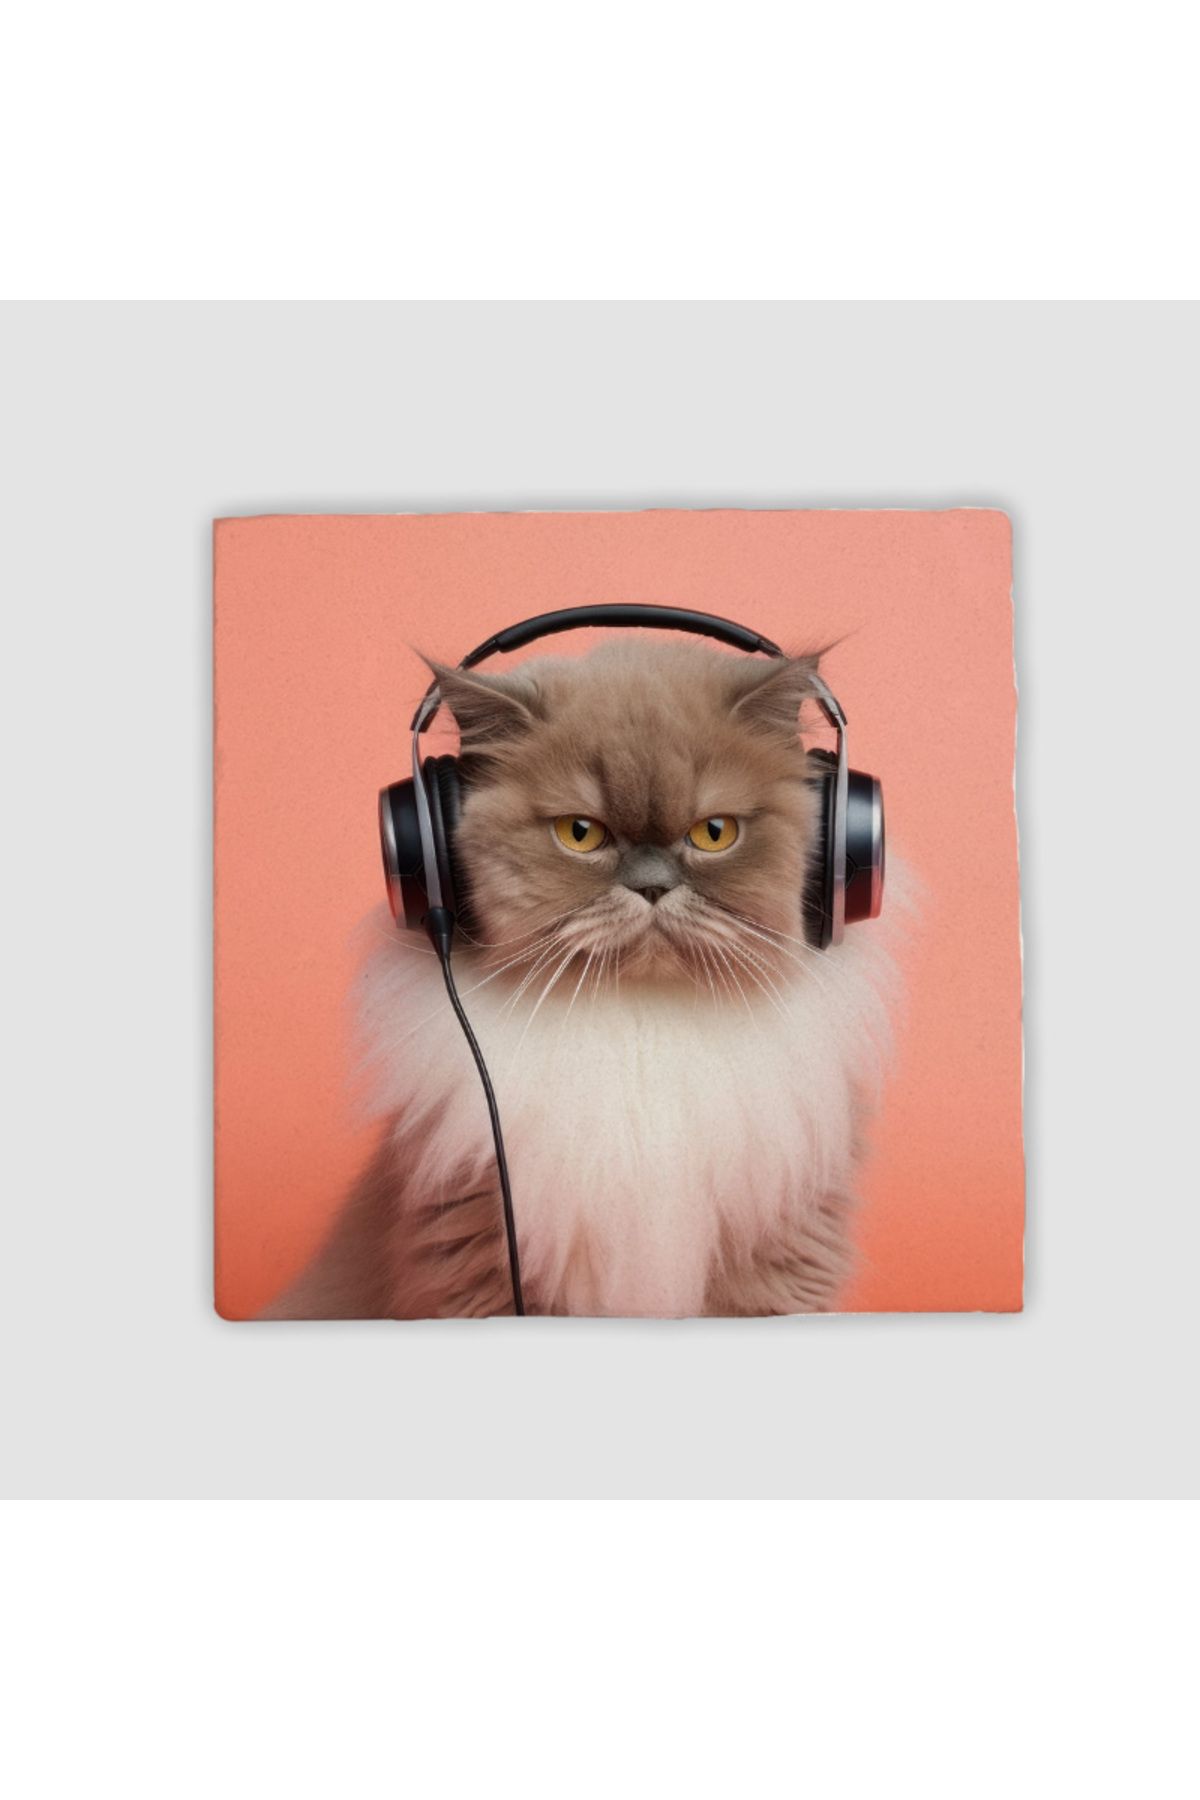 MoonArtica Müzik Tutkunu Kedi Tasarımlı 4lü Taş Bardak Altlığı